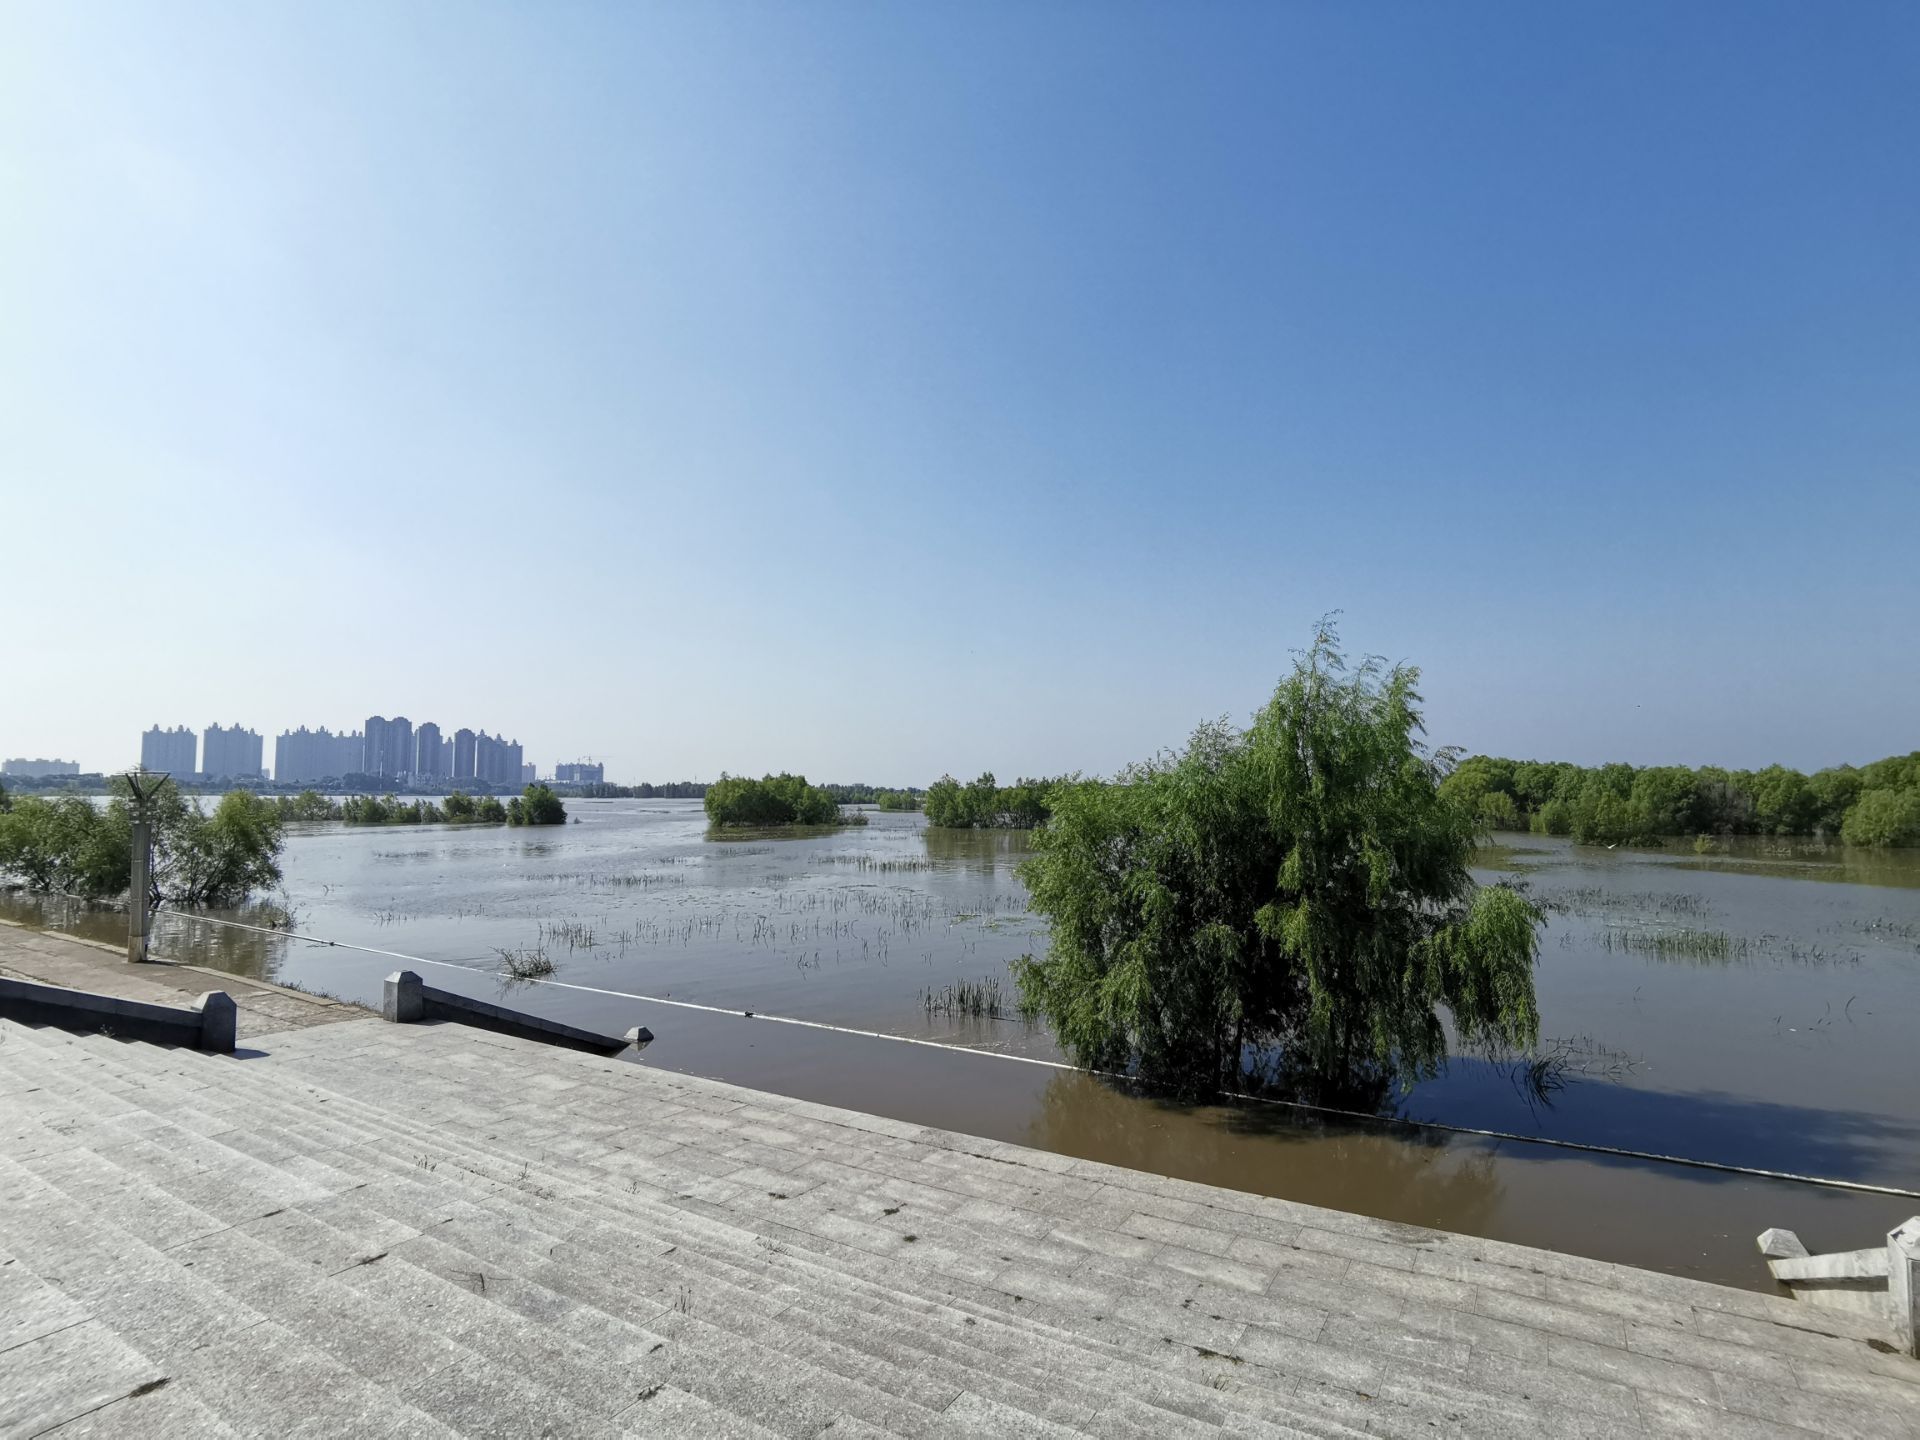 【携程攻略】齐齐哈尔嫩江公园景点,去的时候恰逢嫩江涨水,江边的道路